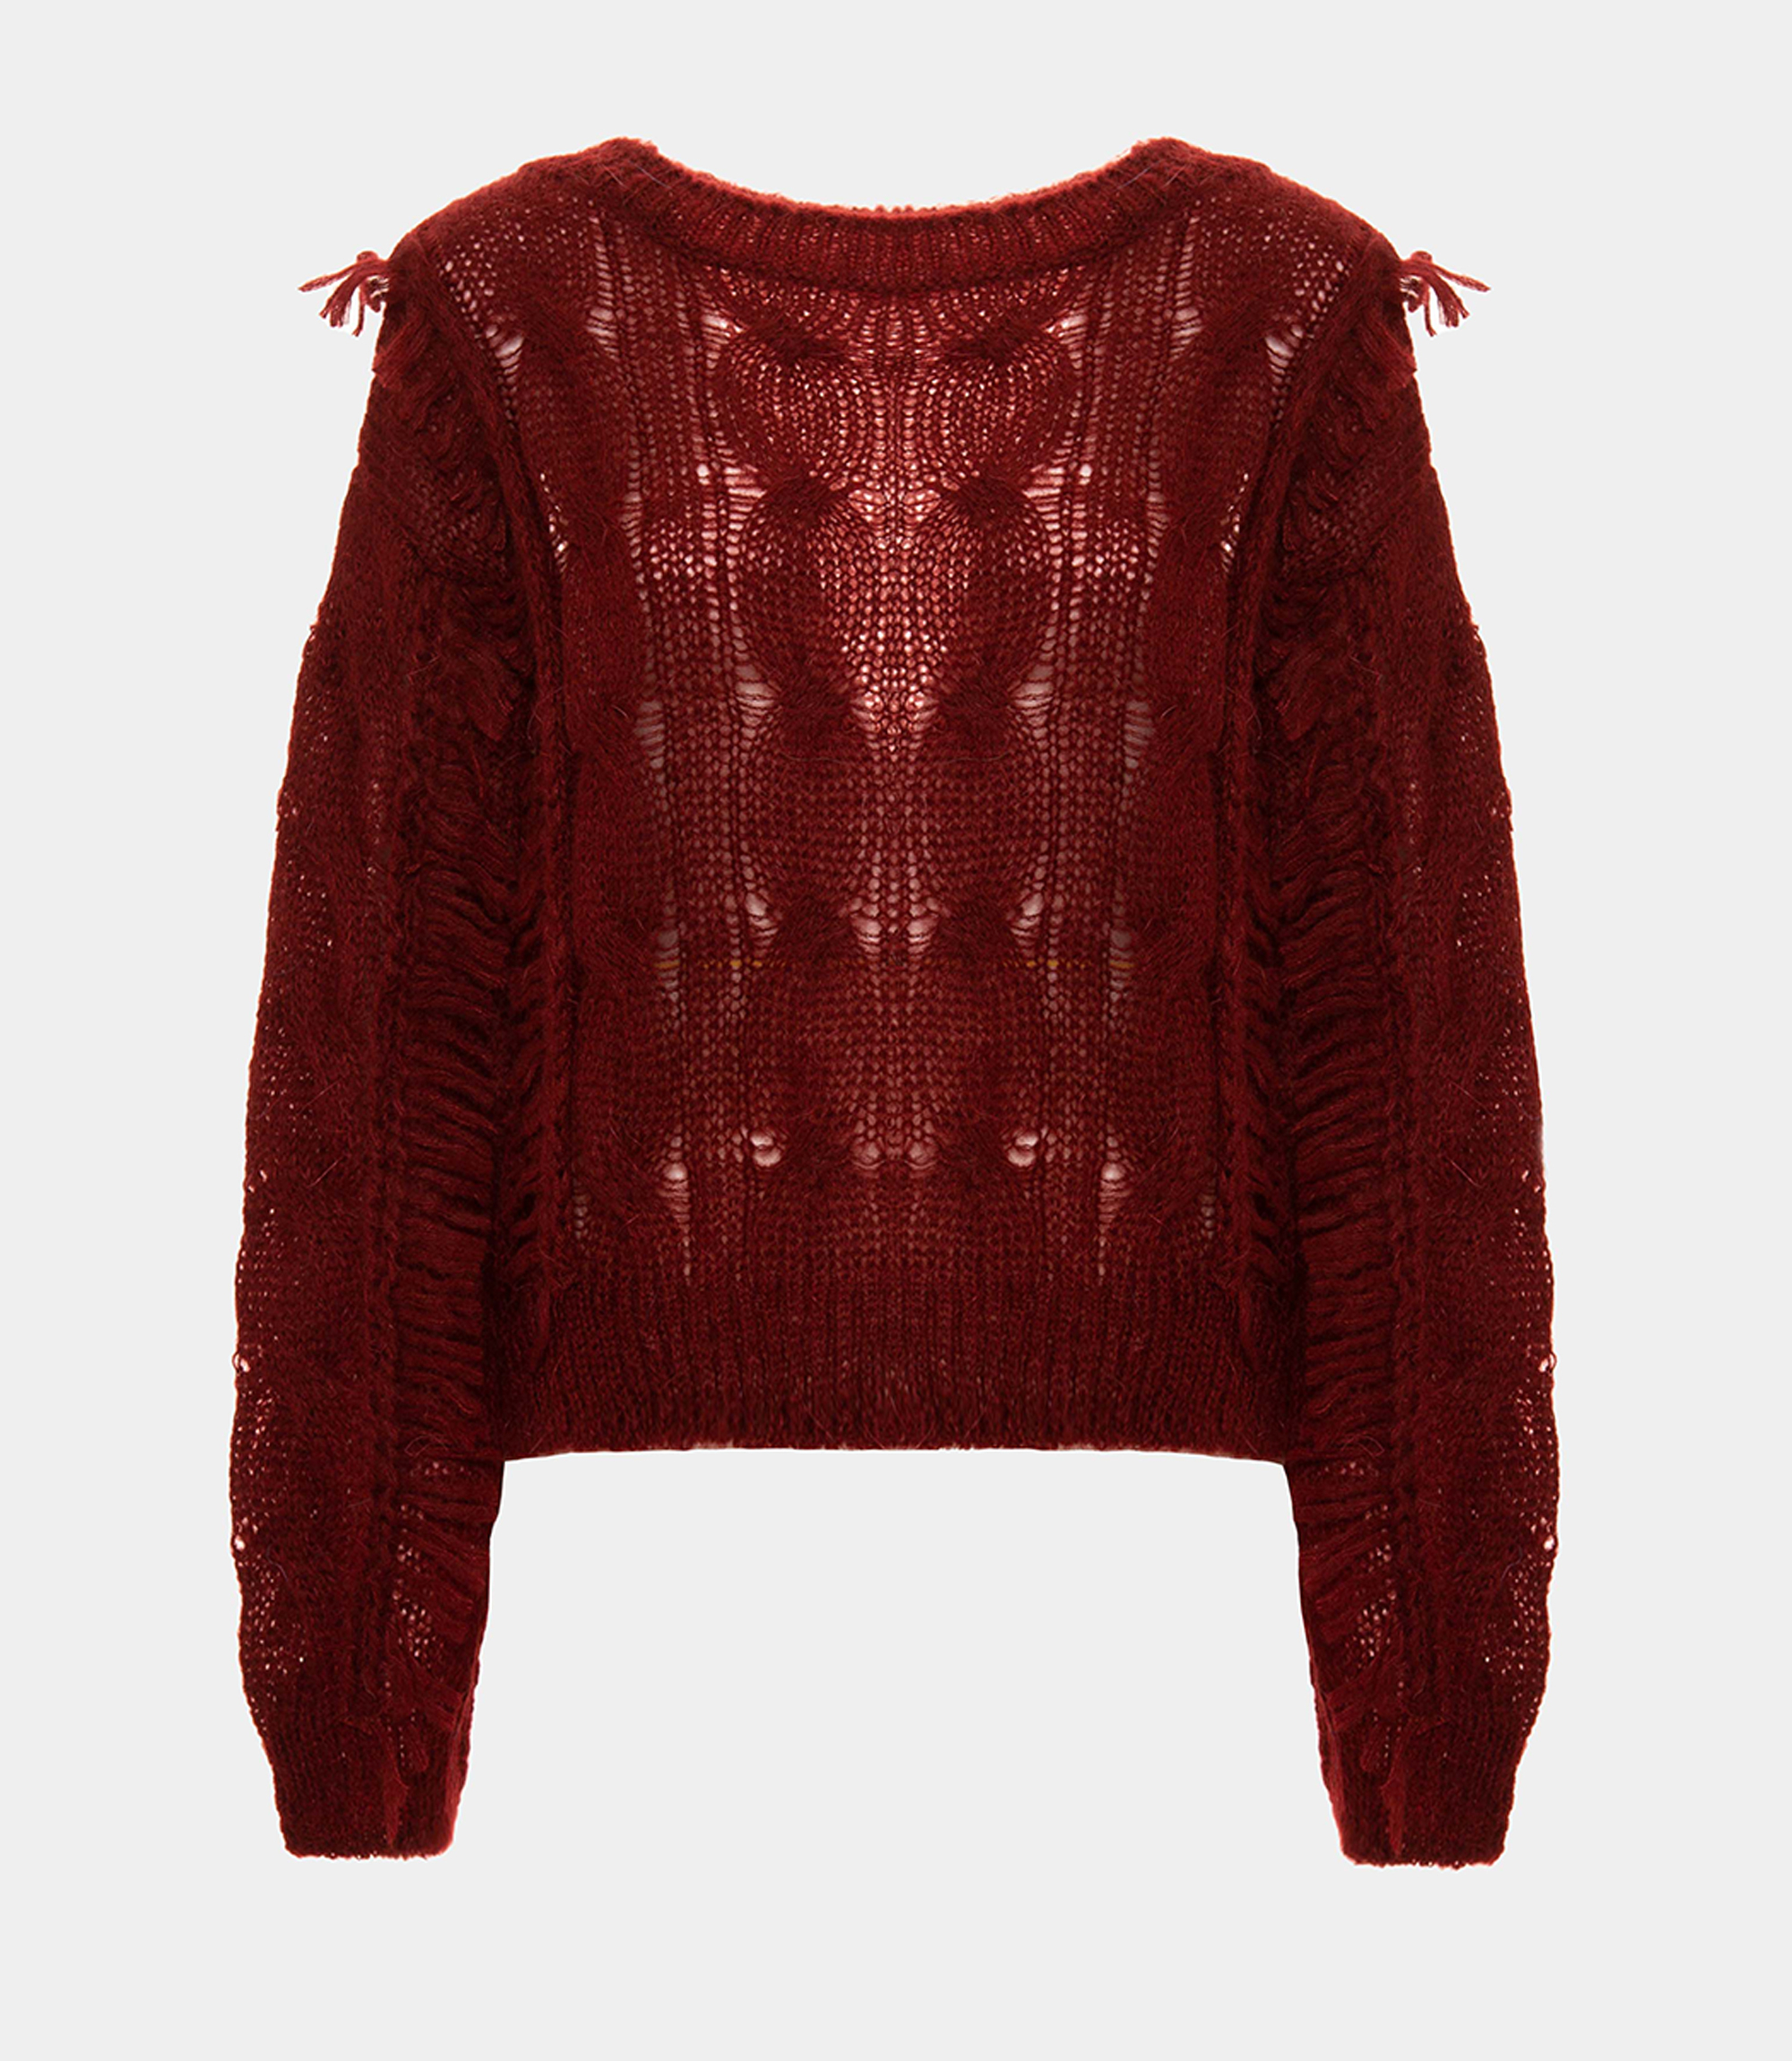 Fringe sweater - CLOTHING - Nara Milano